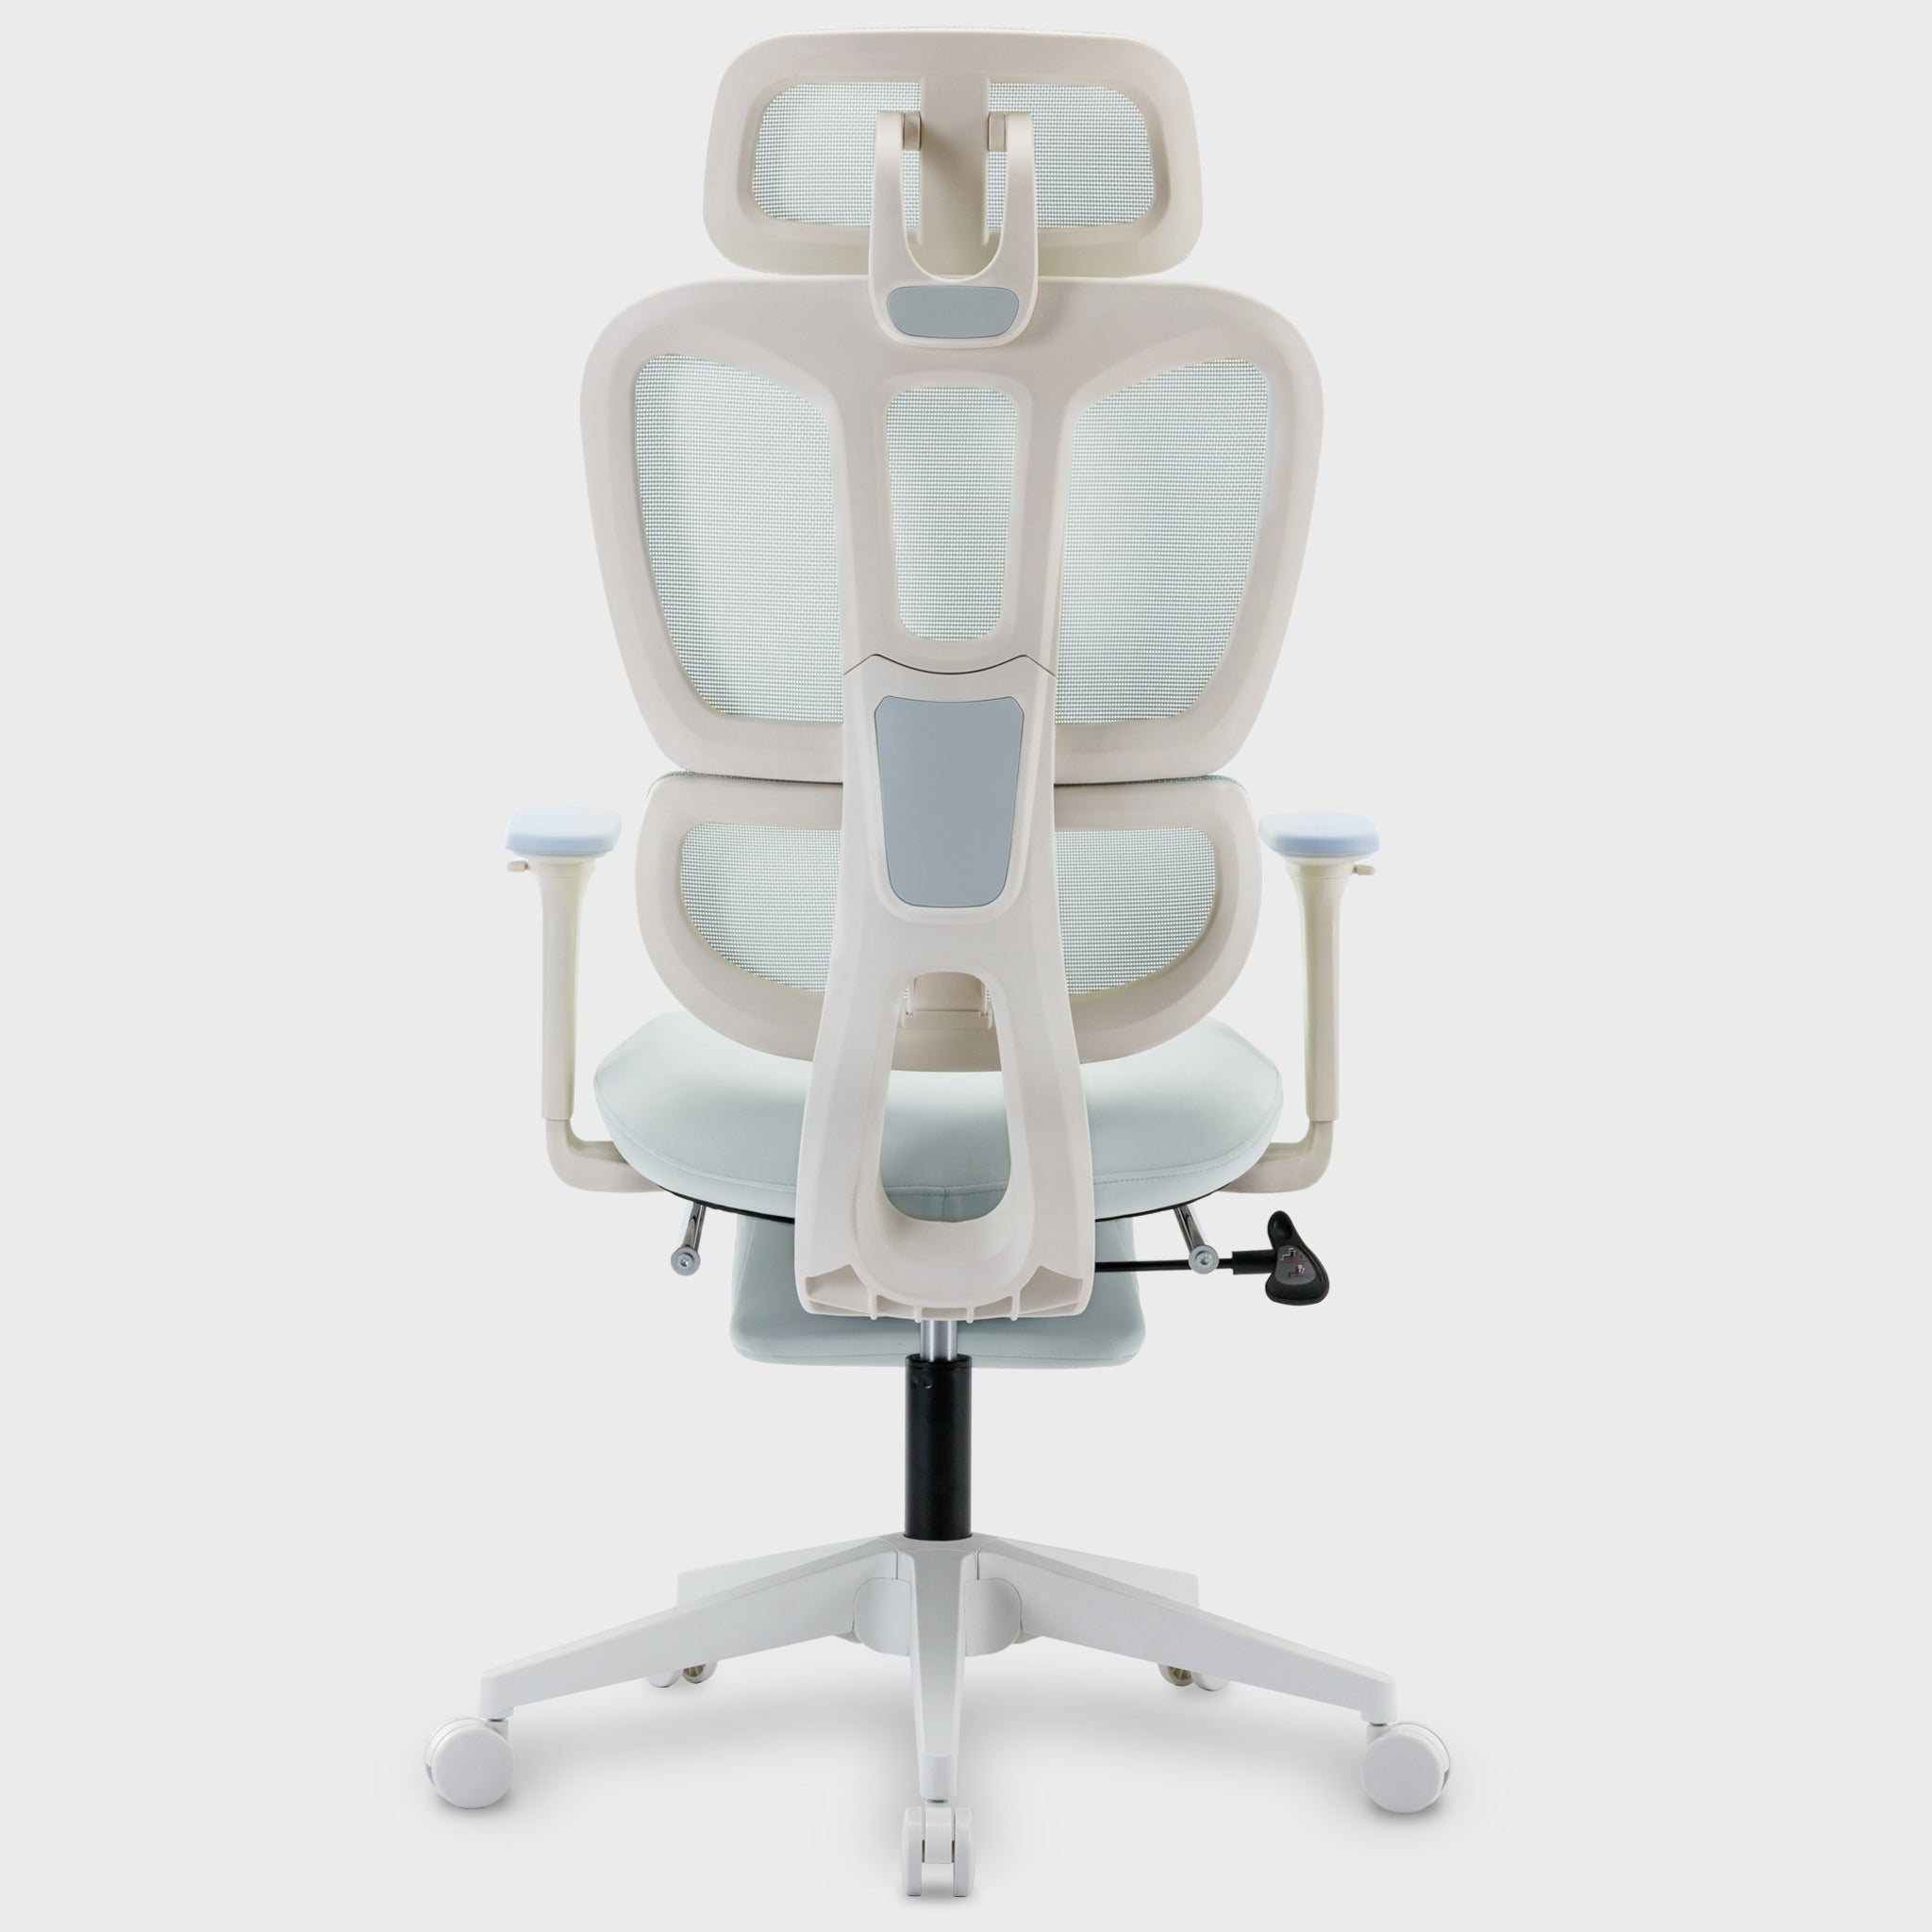 Ergonomic Office Chair Pro 3116